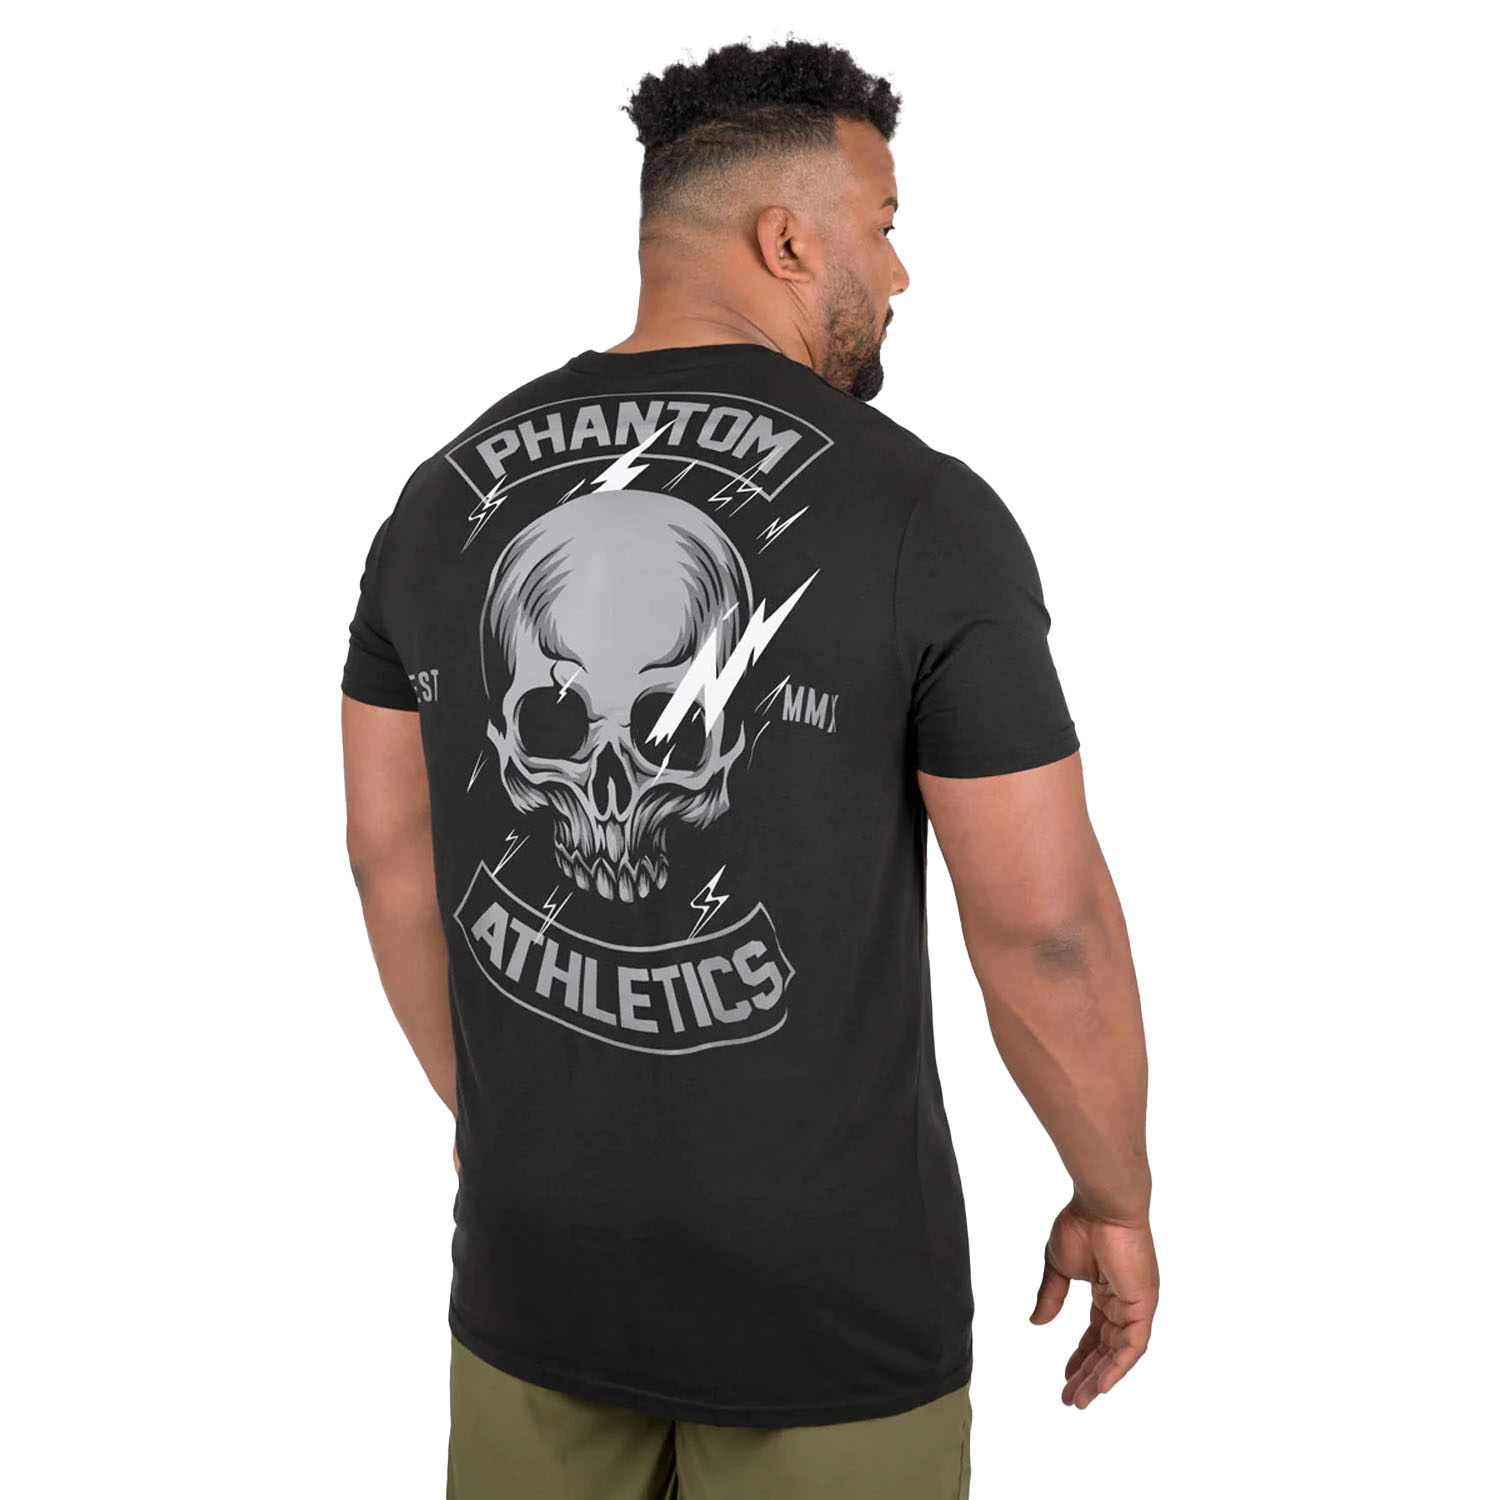 Phantom Athletics T-Shirt, Lightning Skull, black, S